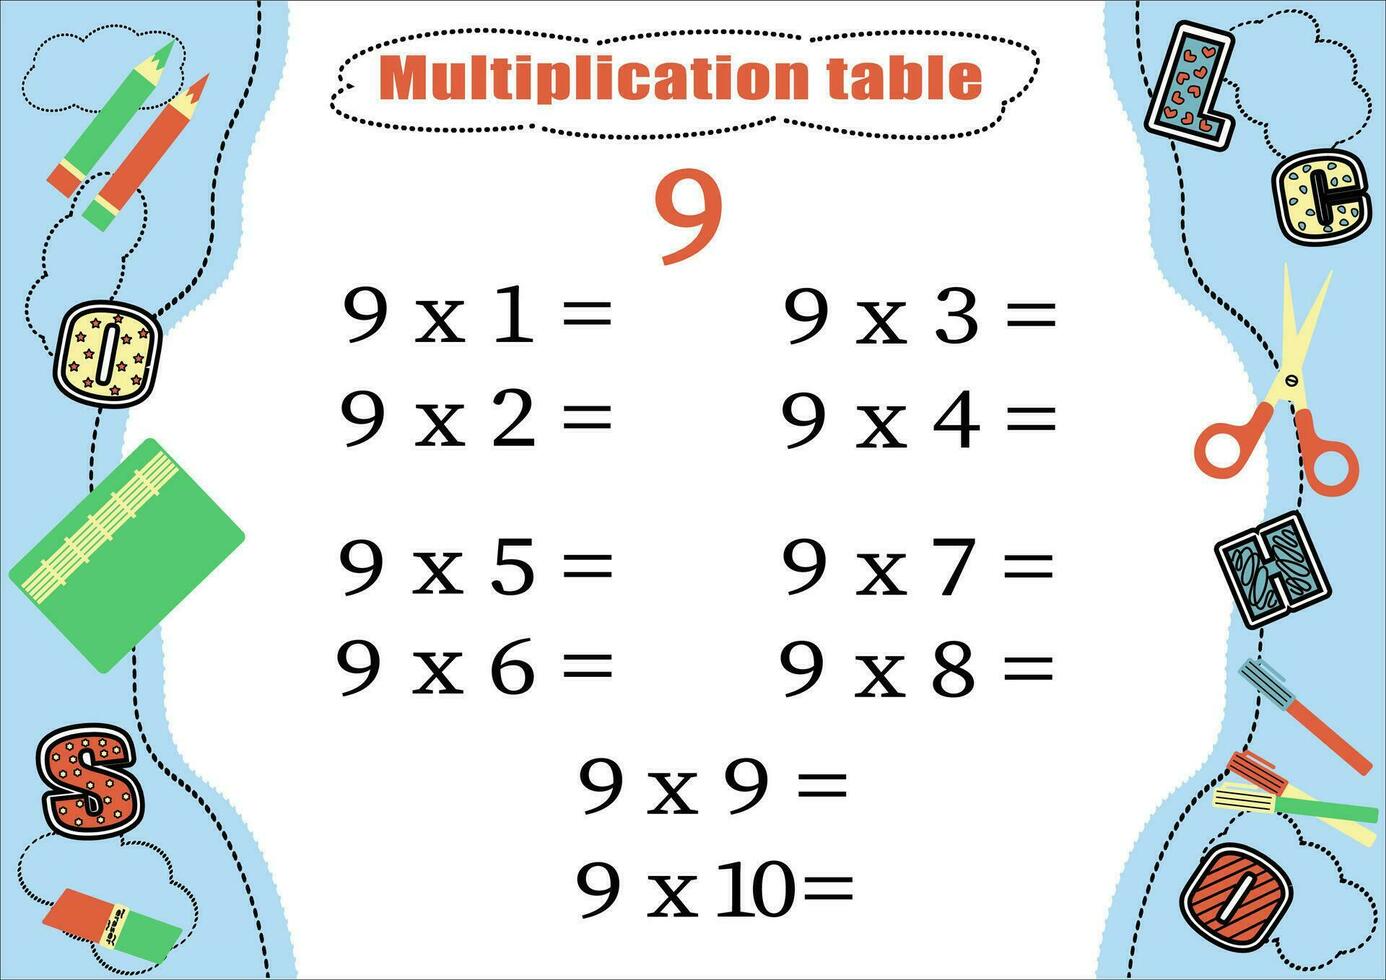 Multiplikation Tabelle durch 9 mit ein Aufgabe zu konsolidieren Wissen von Multiplikation. bunt Karikatur Multiplikation Tabelle Vektor zum Lehren Mathematik. Schule Schreibwaren. eps10